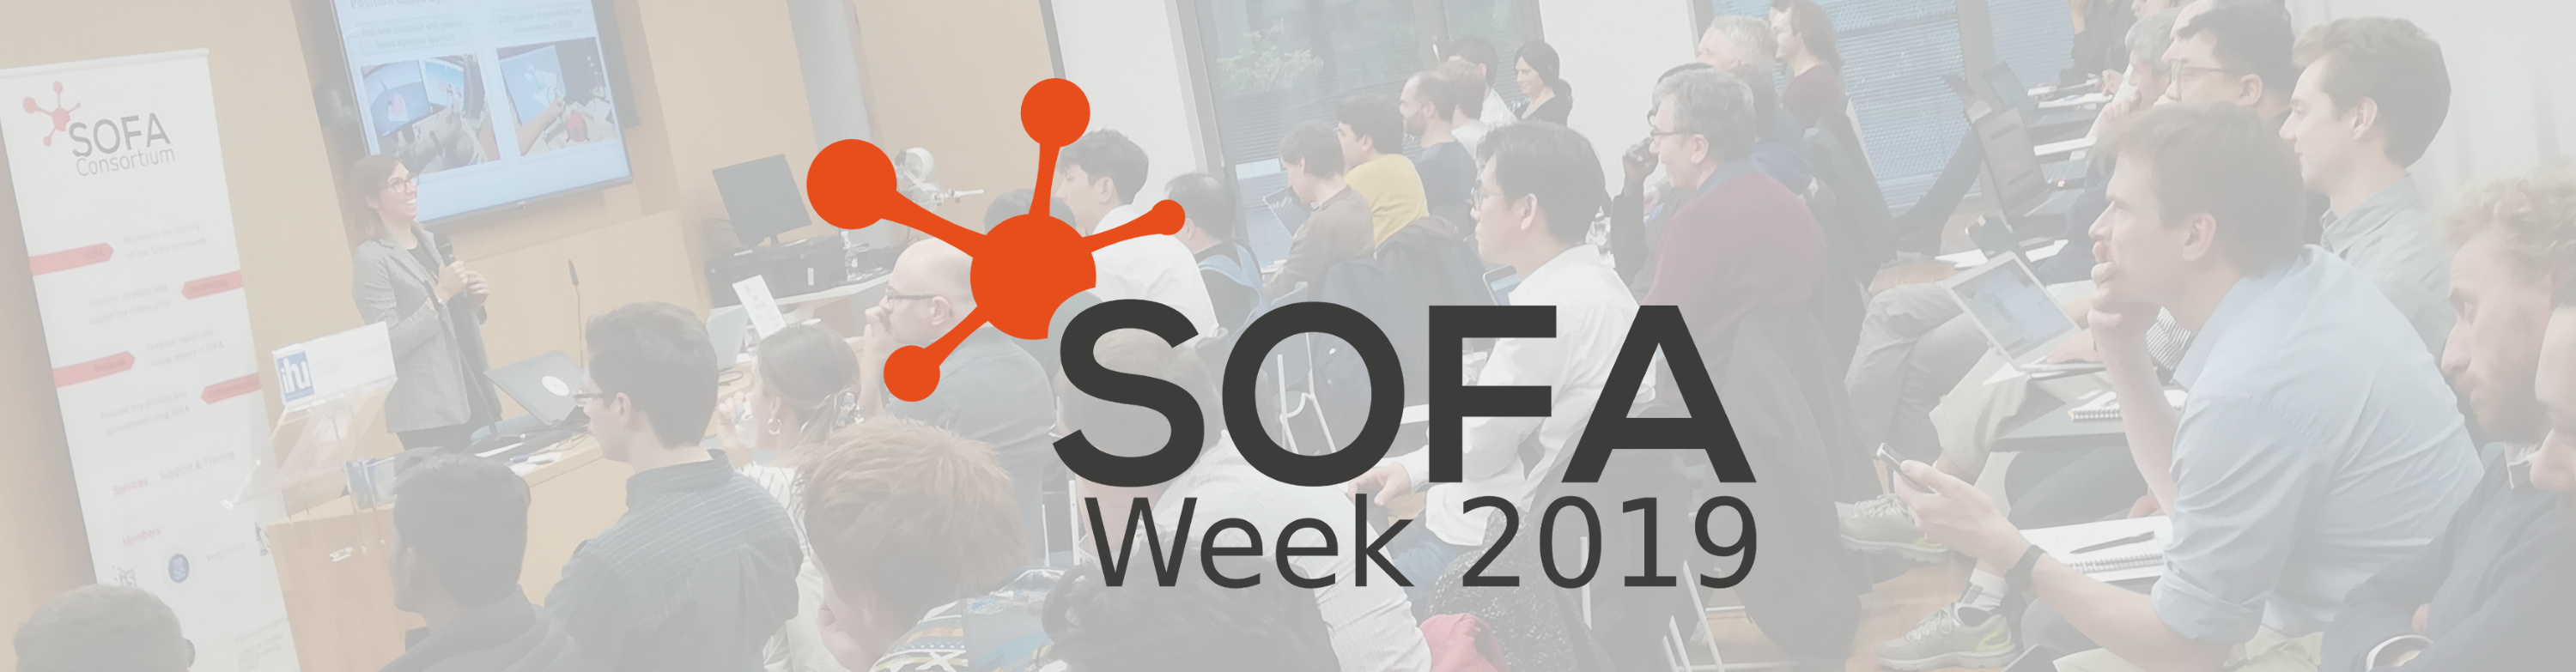 SOFA Week